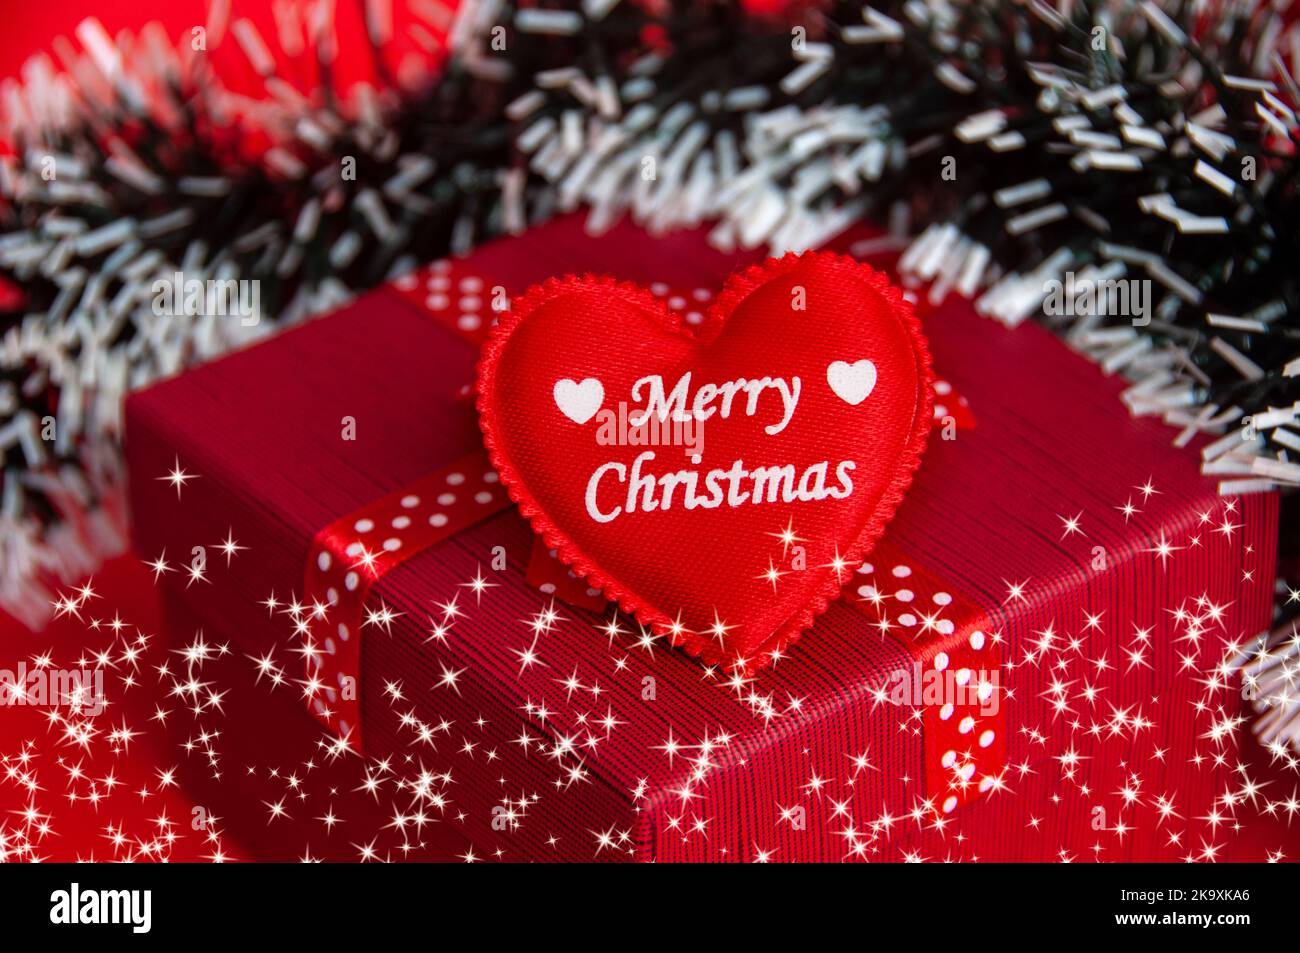 Frohe Weihnachten Text auf Herz-Form auf der Oberseite der roten Farbe Geschenk mit Weihnachtsdekoration Hintergrund. Stockfoto